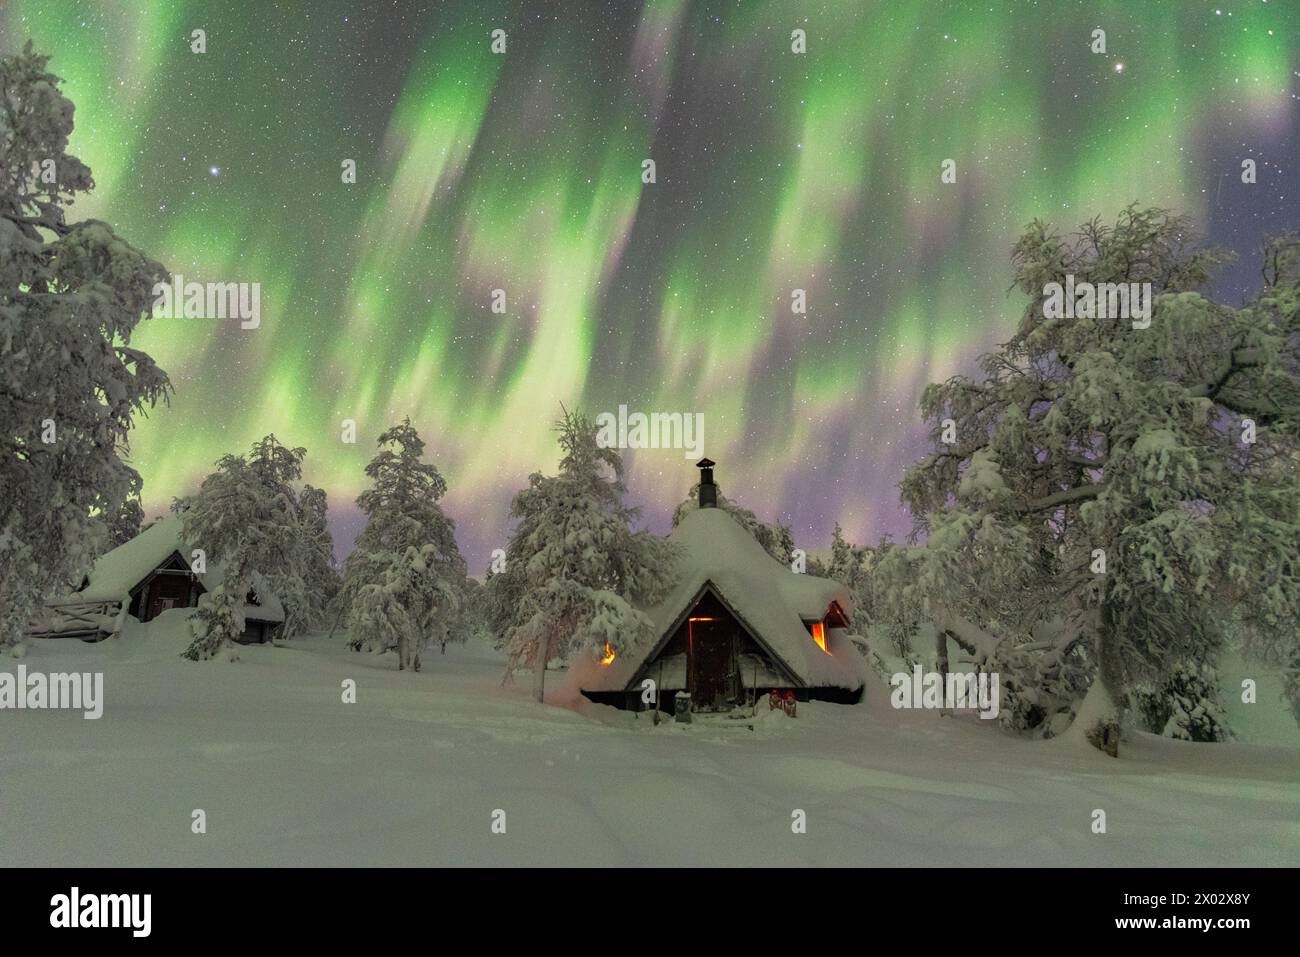 Winterblick auf eine typische Holzhütte, beleuchtet durch das Feuer im gefrorenen Wald während eines Nordlichtersturms (Aurora Borealis), Finnisch-Lappland, Finnland Stockfoto